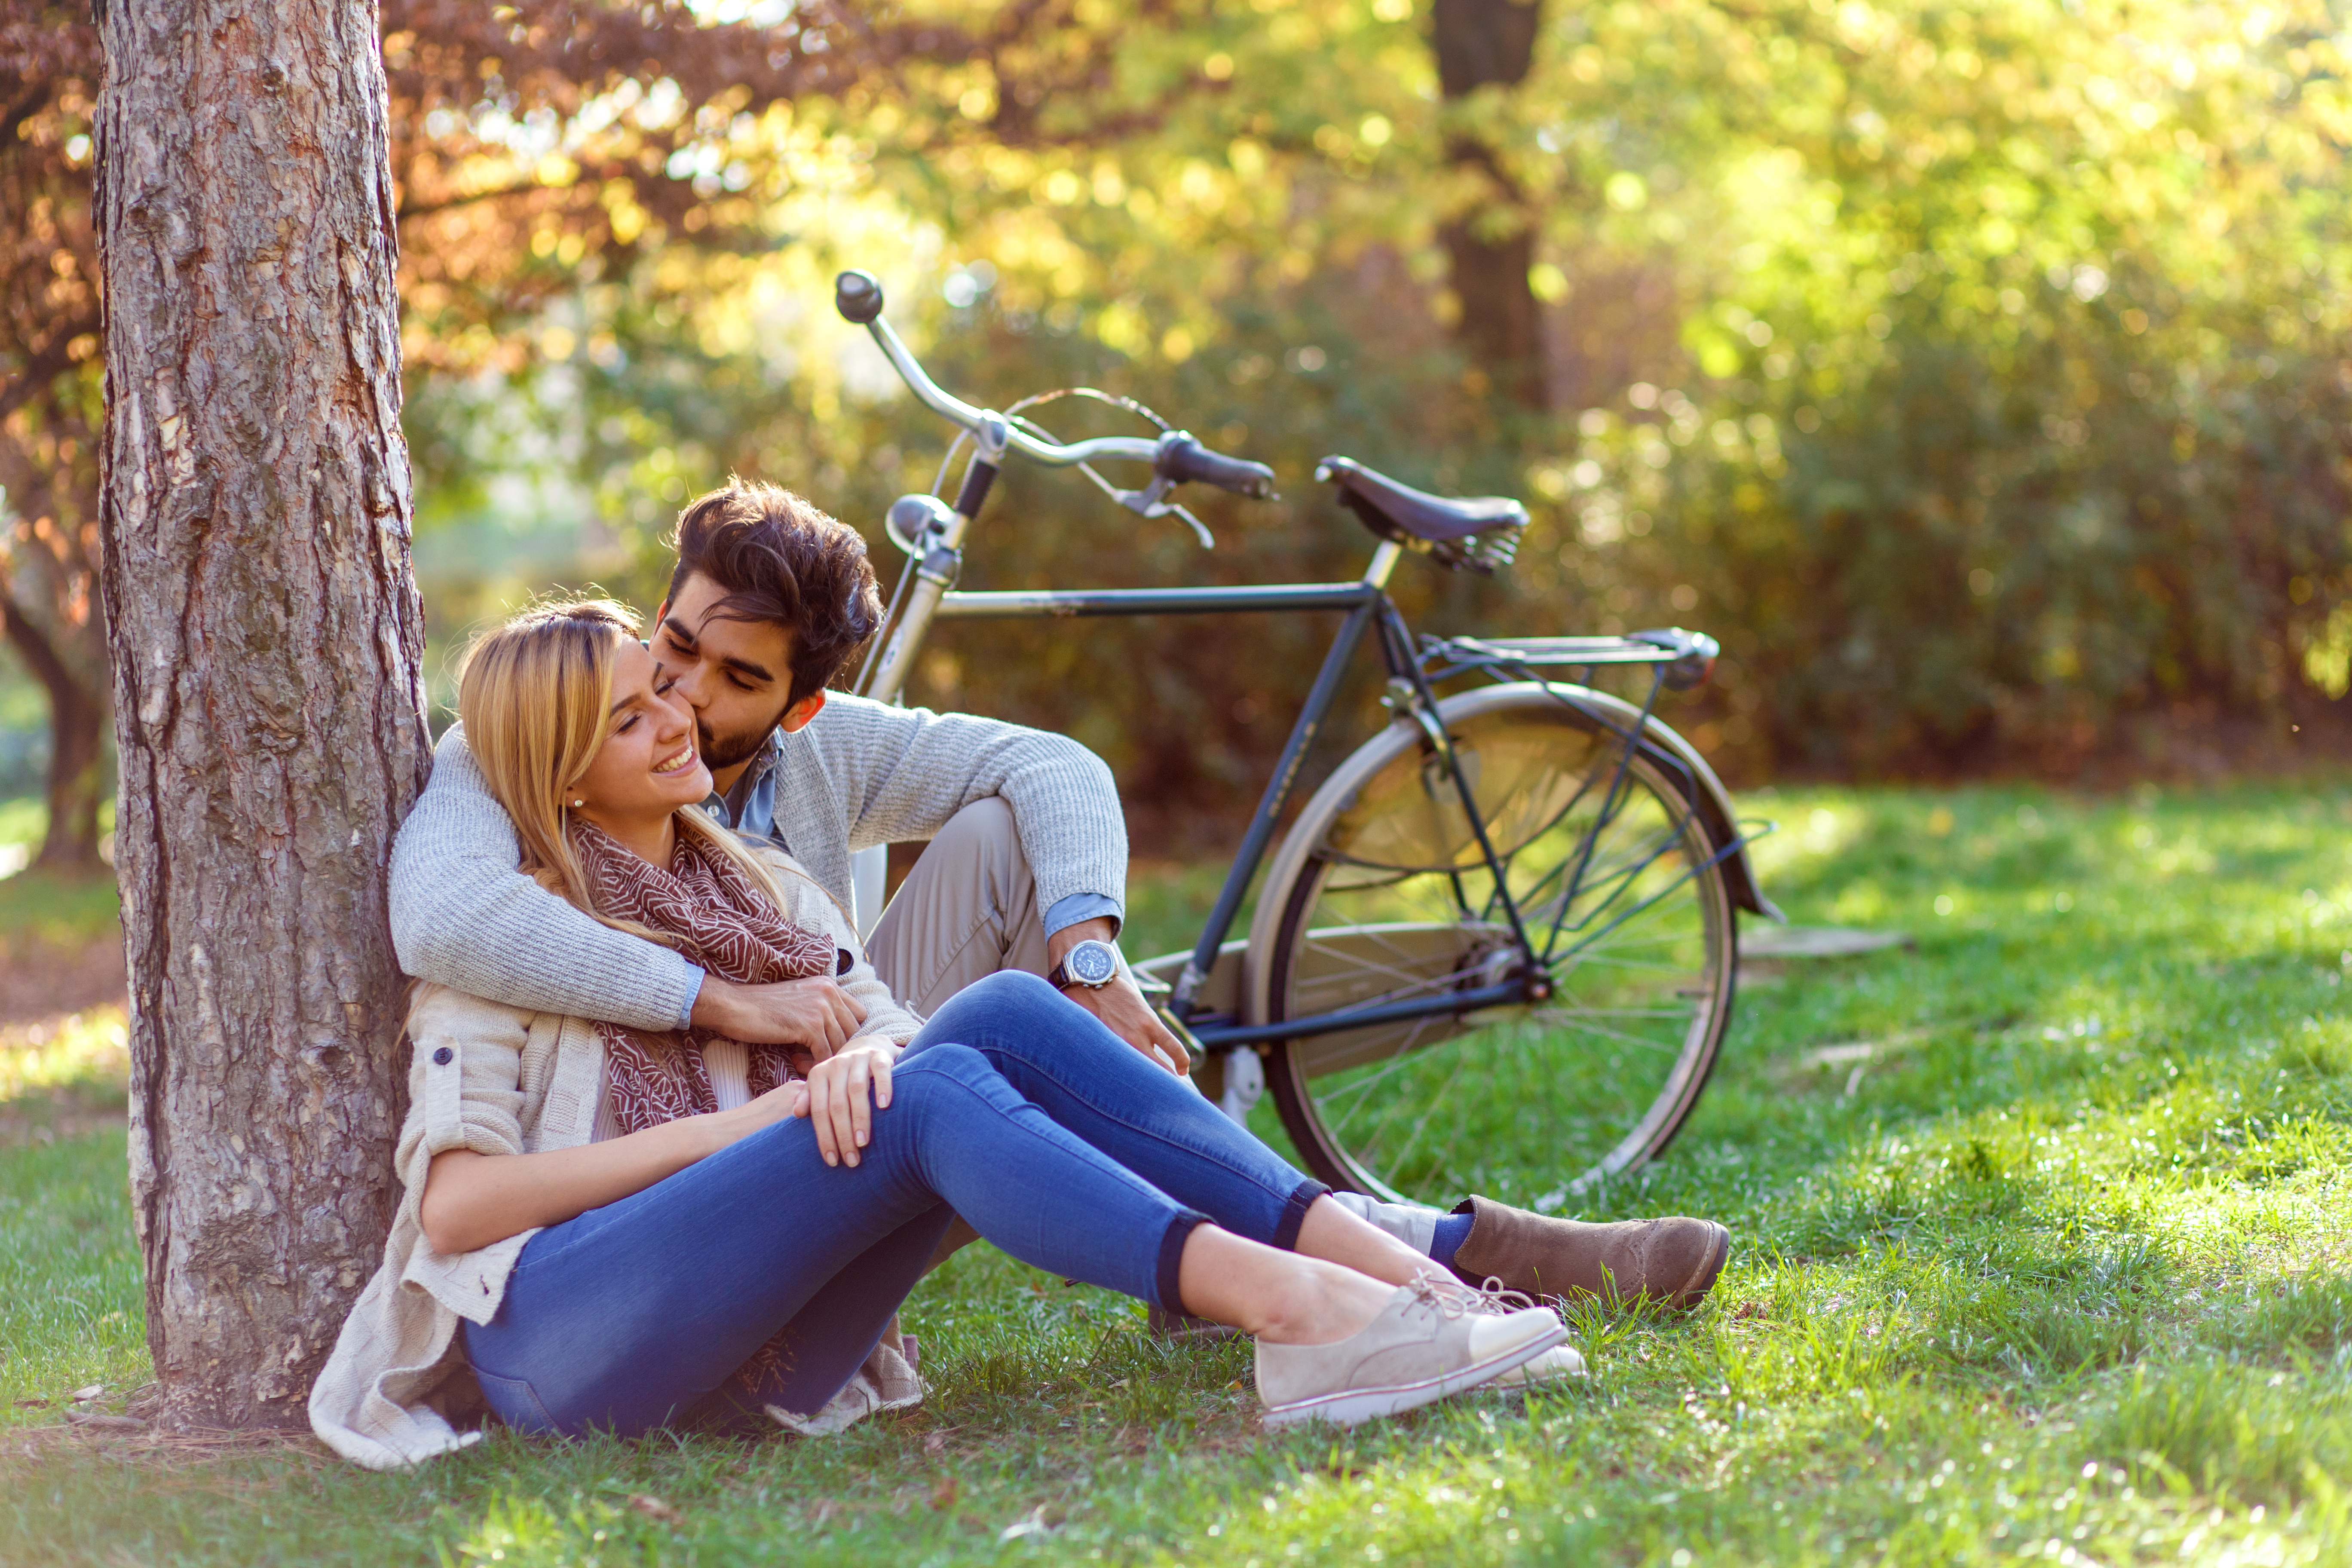 Un jeune couple amoureux photographié assis dans un parc en train de s'adosser à un arbre et de s'embrasser | Source : Shutterstock